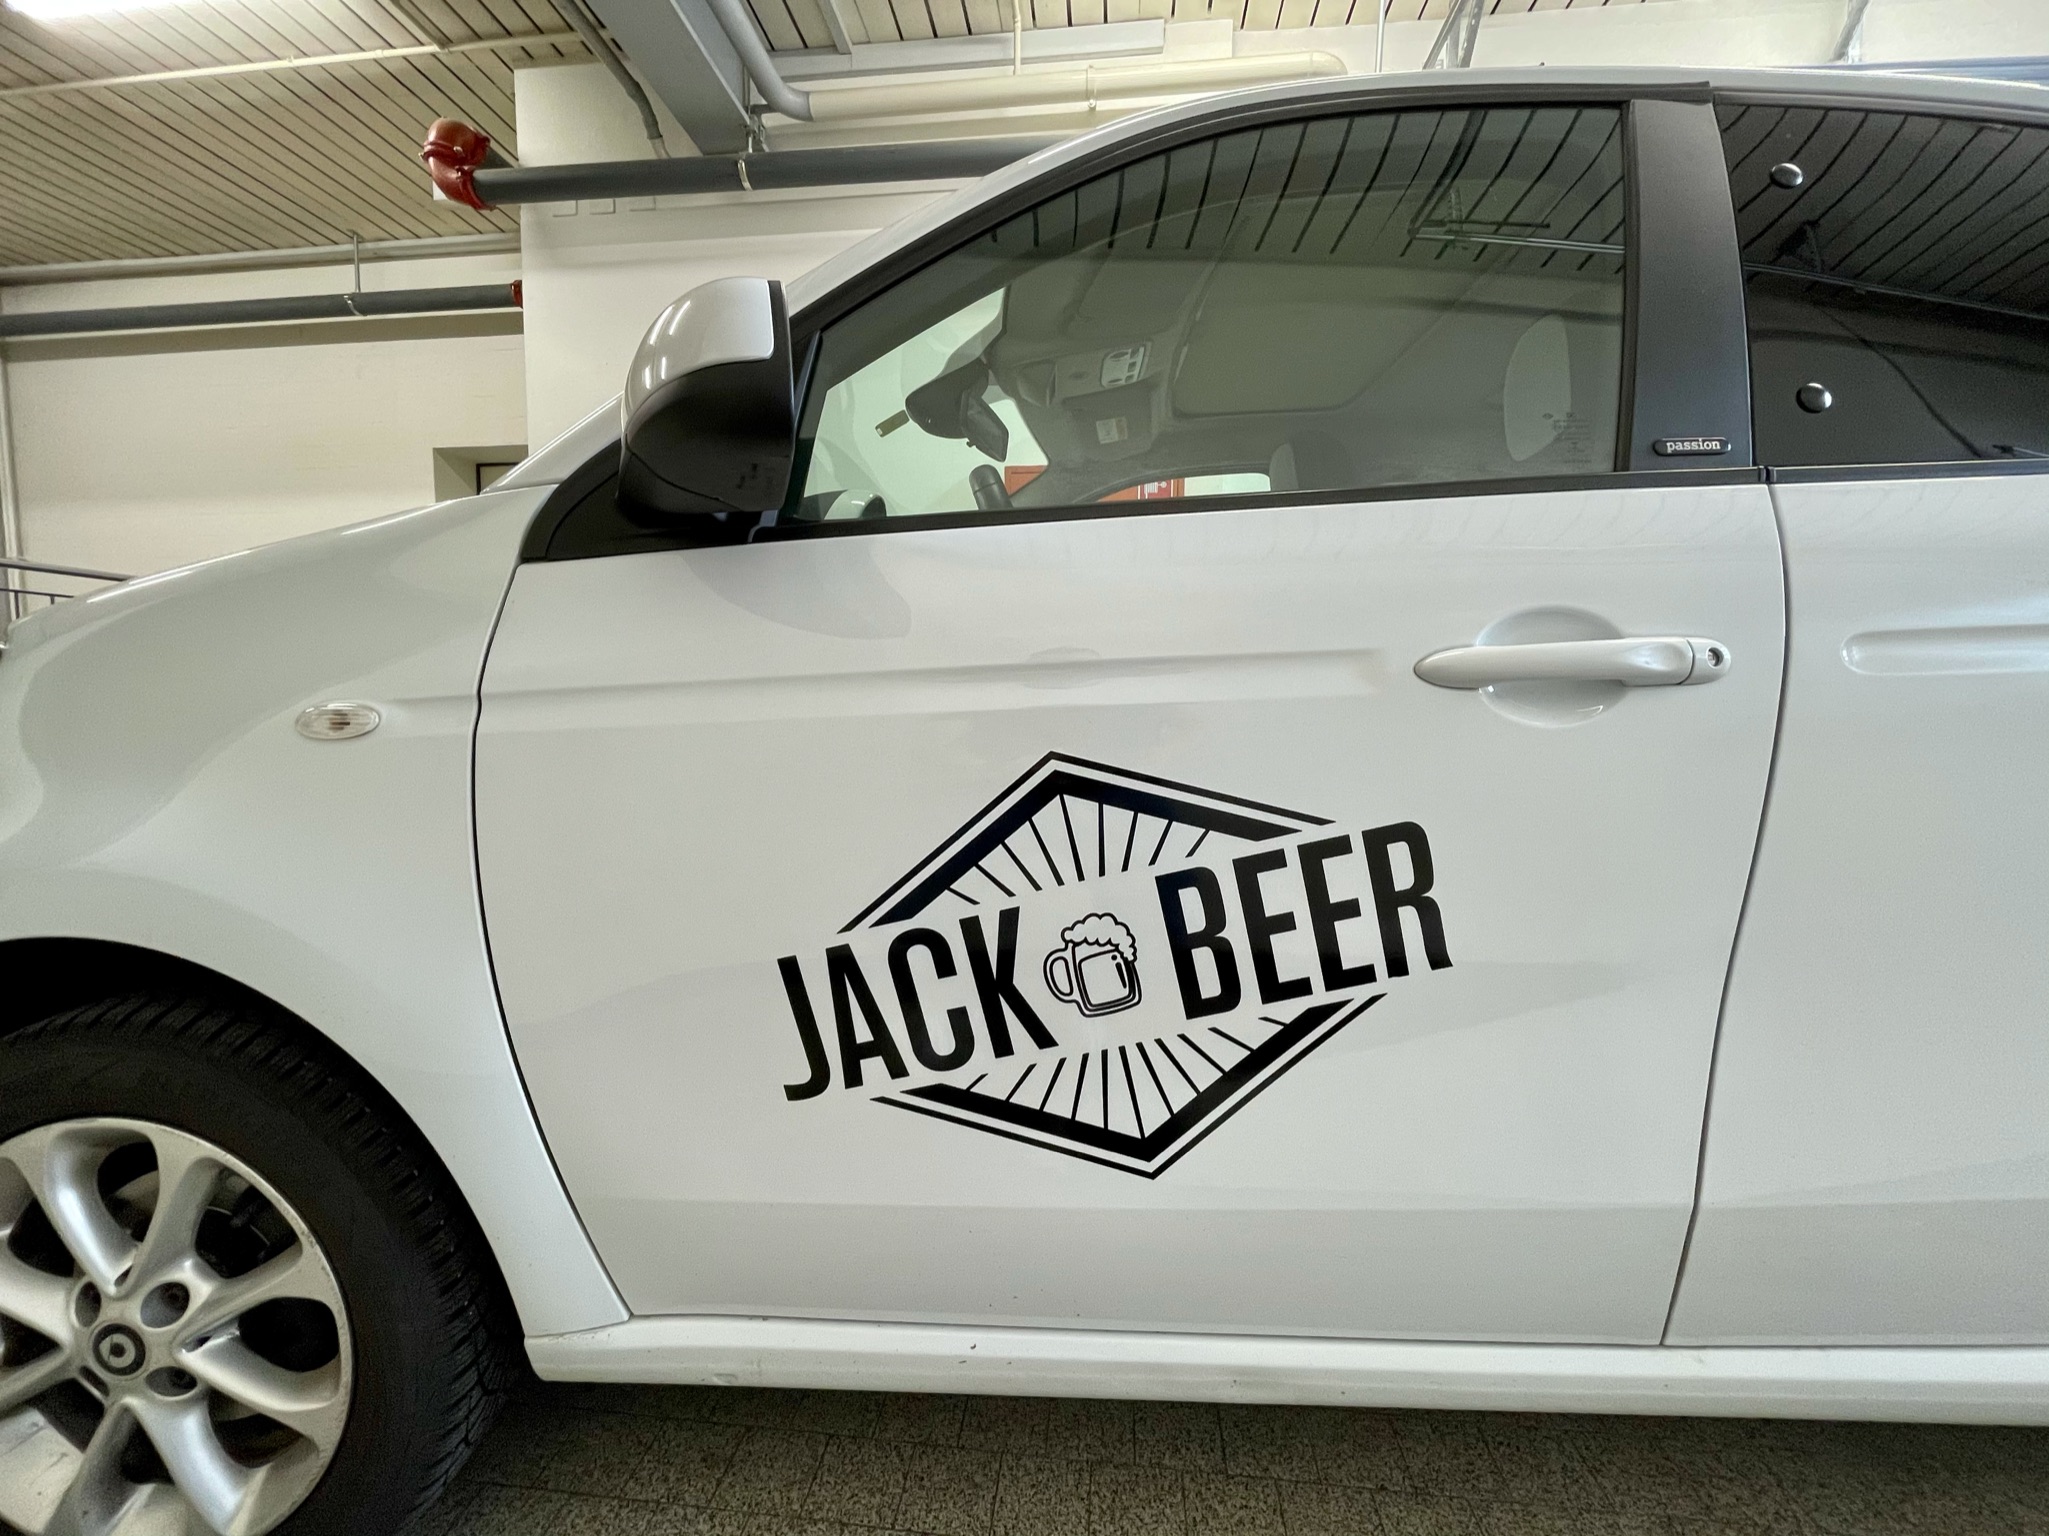 Jack Beer